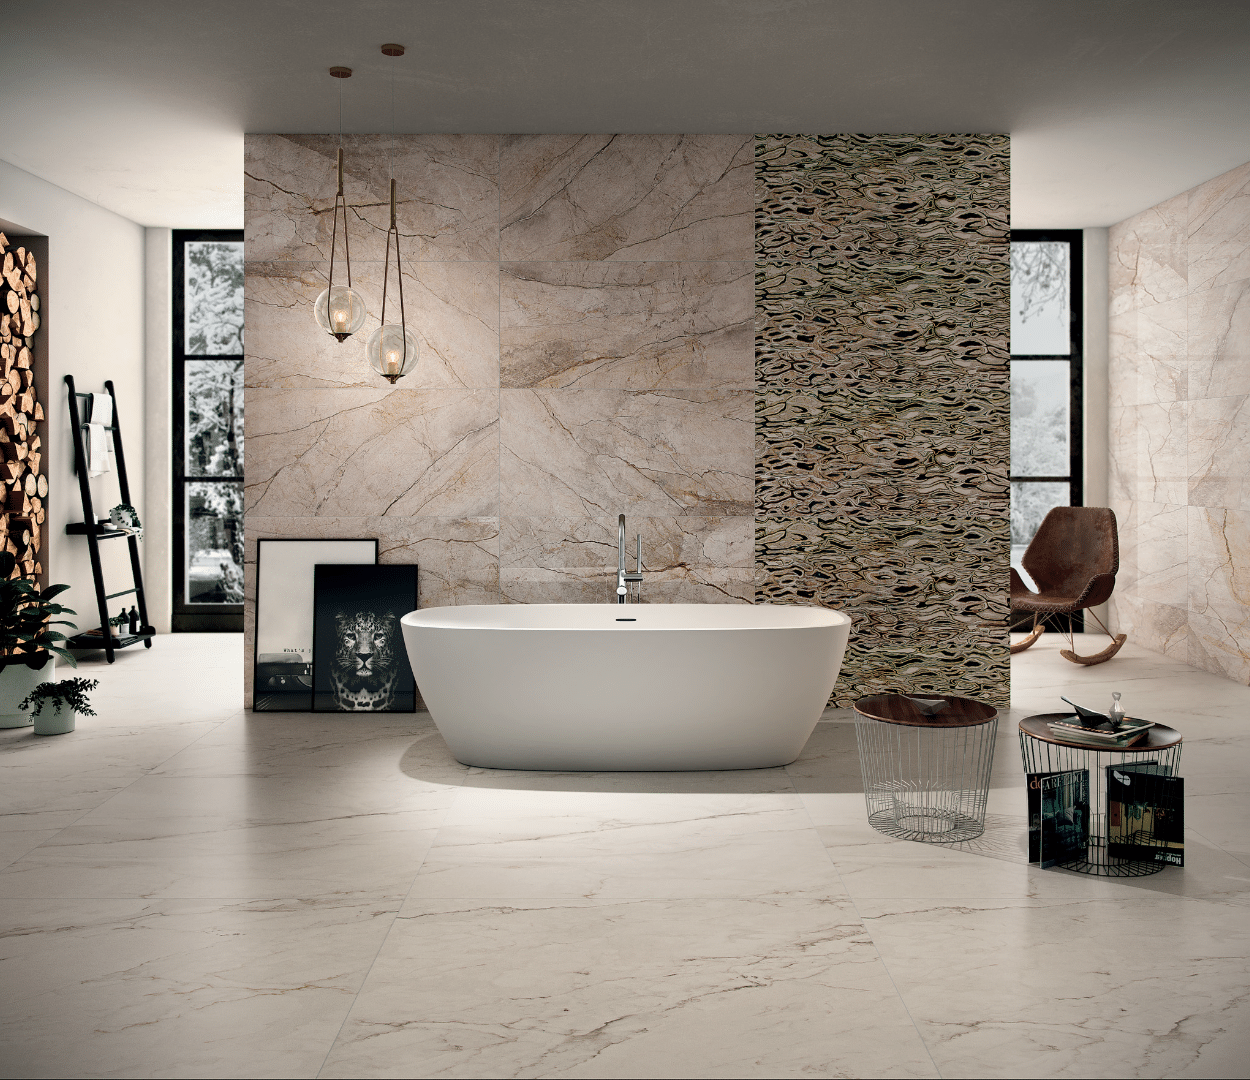 Fliesendorf zeigt ein sehr modernes Badezimmer mit freistehender Badewanne, einer Trennwand inkl. Fußboden in Marmor-Optik, von der Wand hängende Lampen und eleganter Deko.